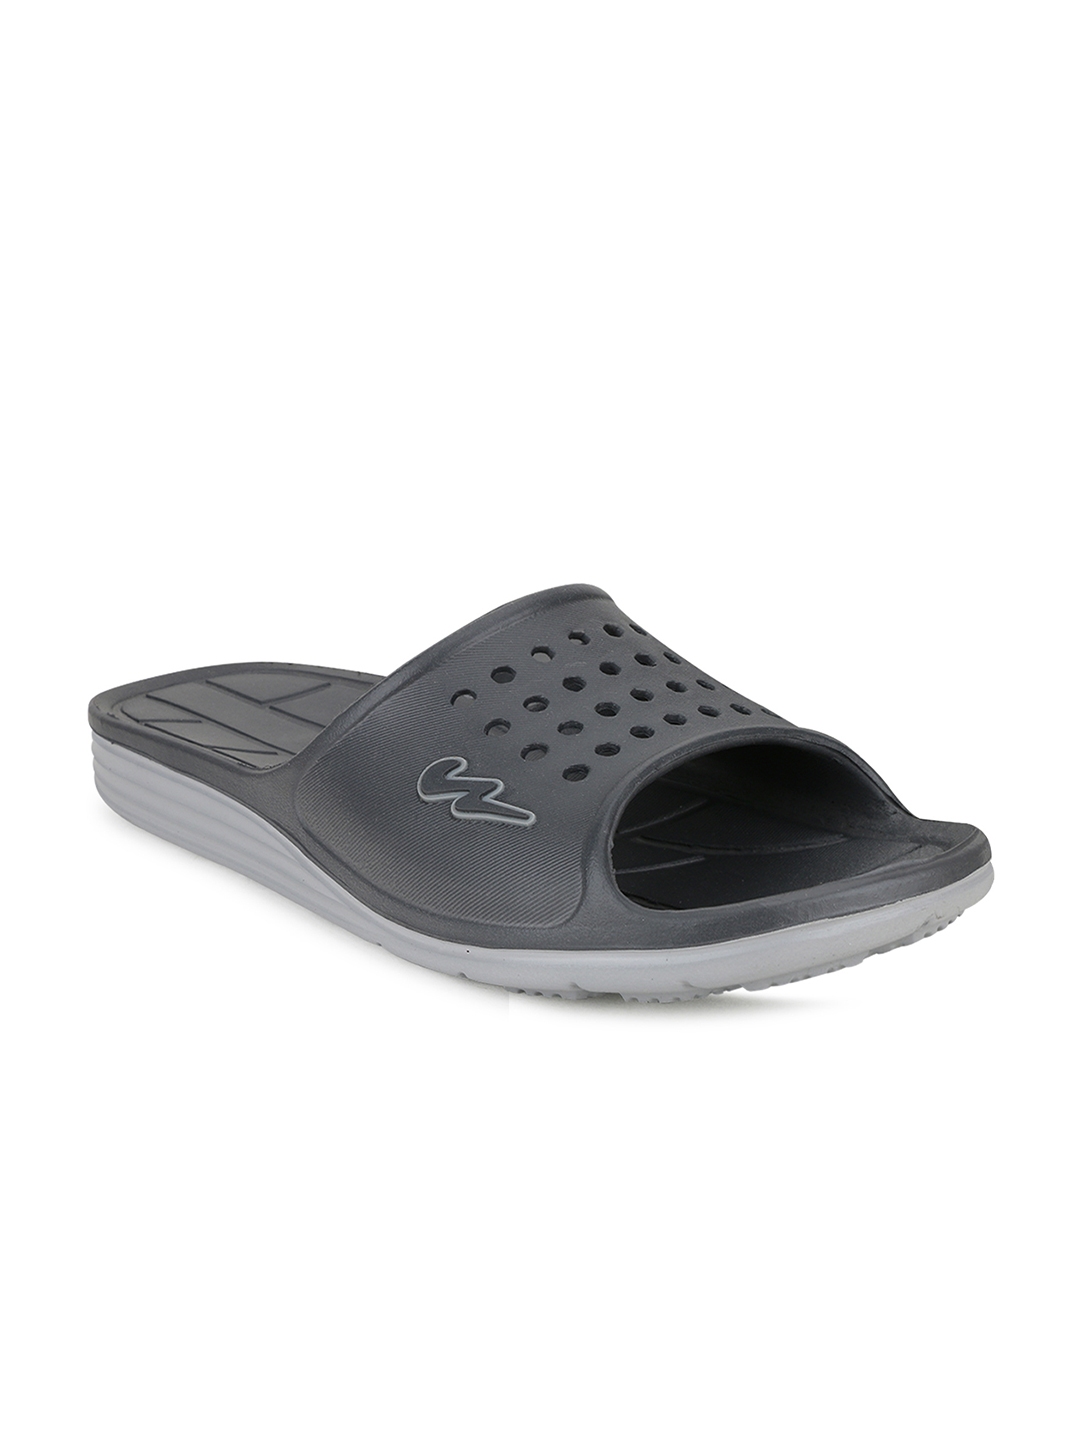 Buy Campus Men Grey Solid Sliders - Flip Flops for Men 13925034 | Myntra